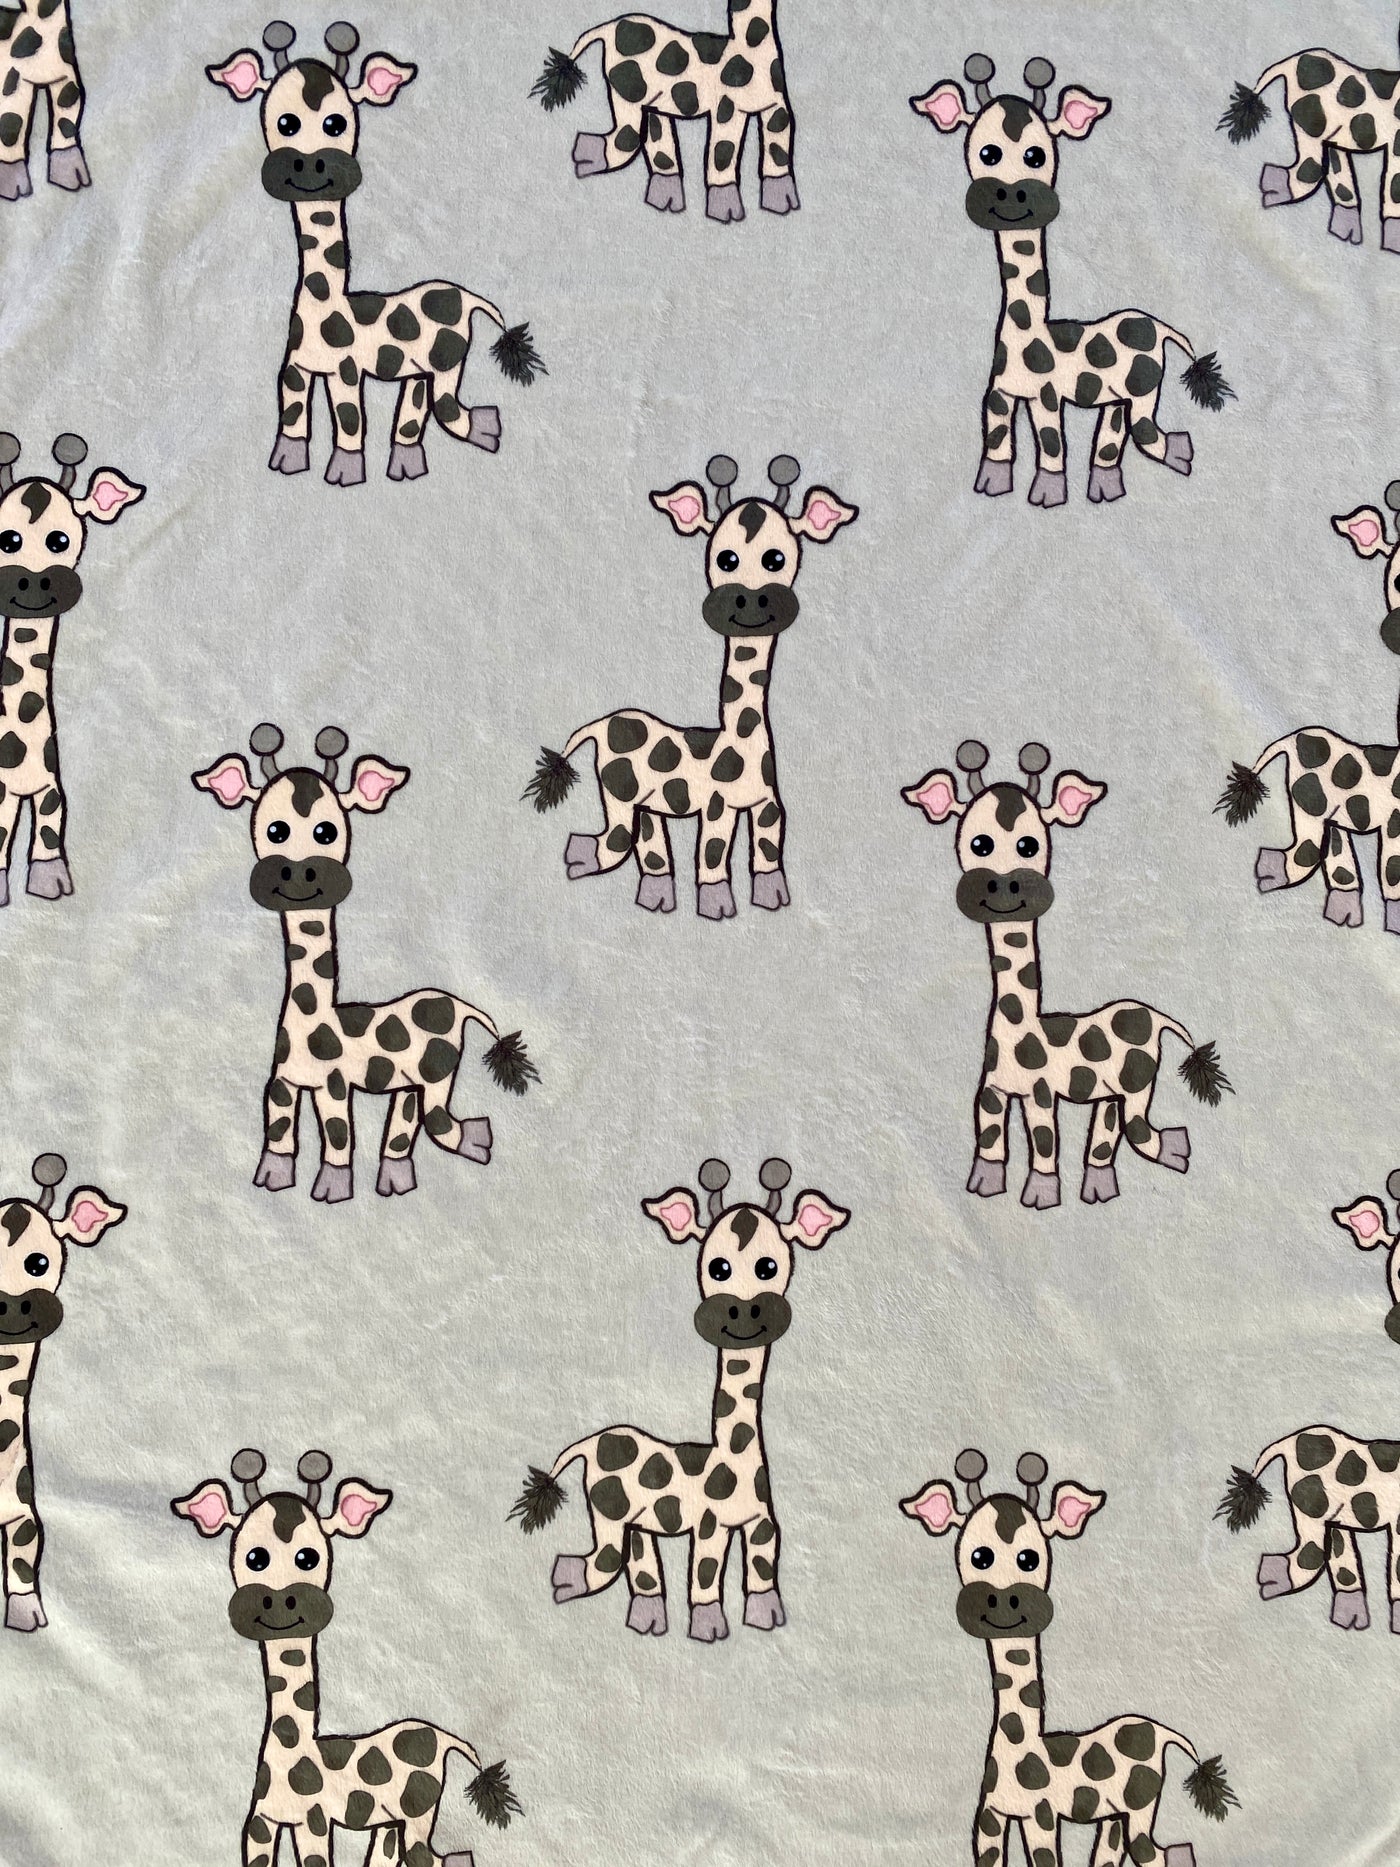 Giant Blanket: The Laughing Giraffes